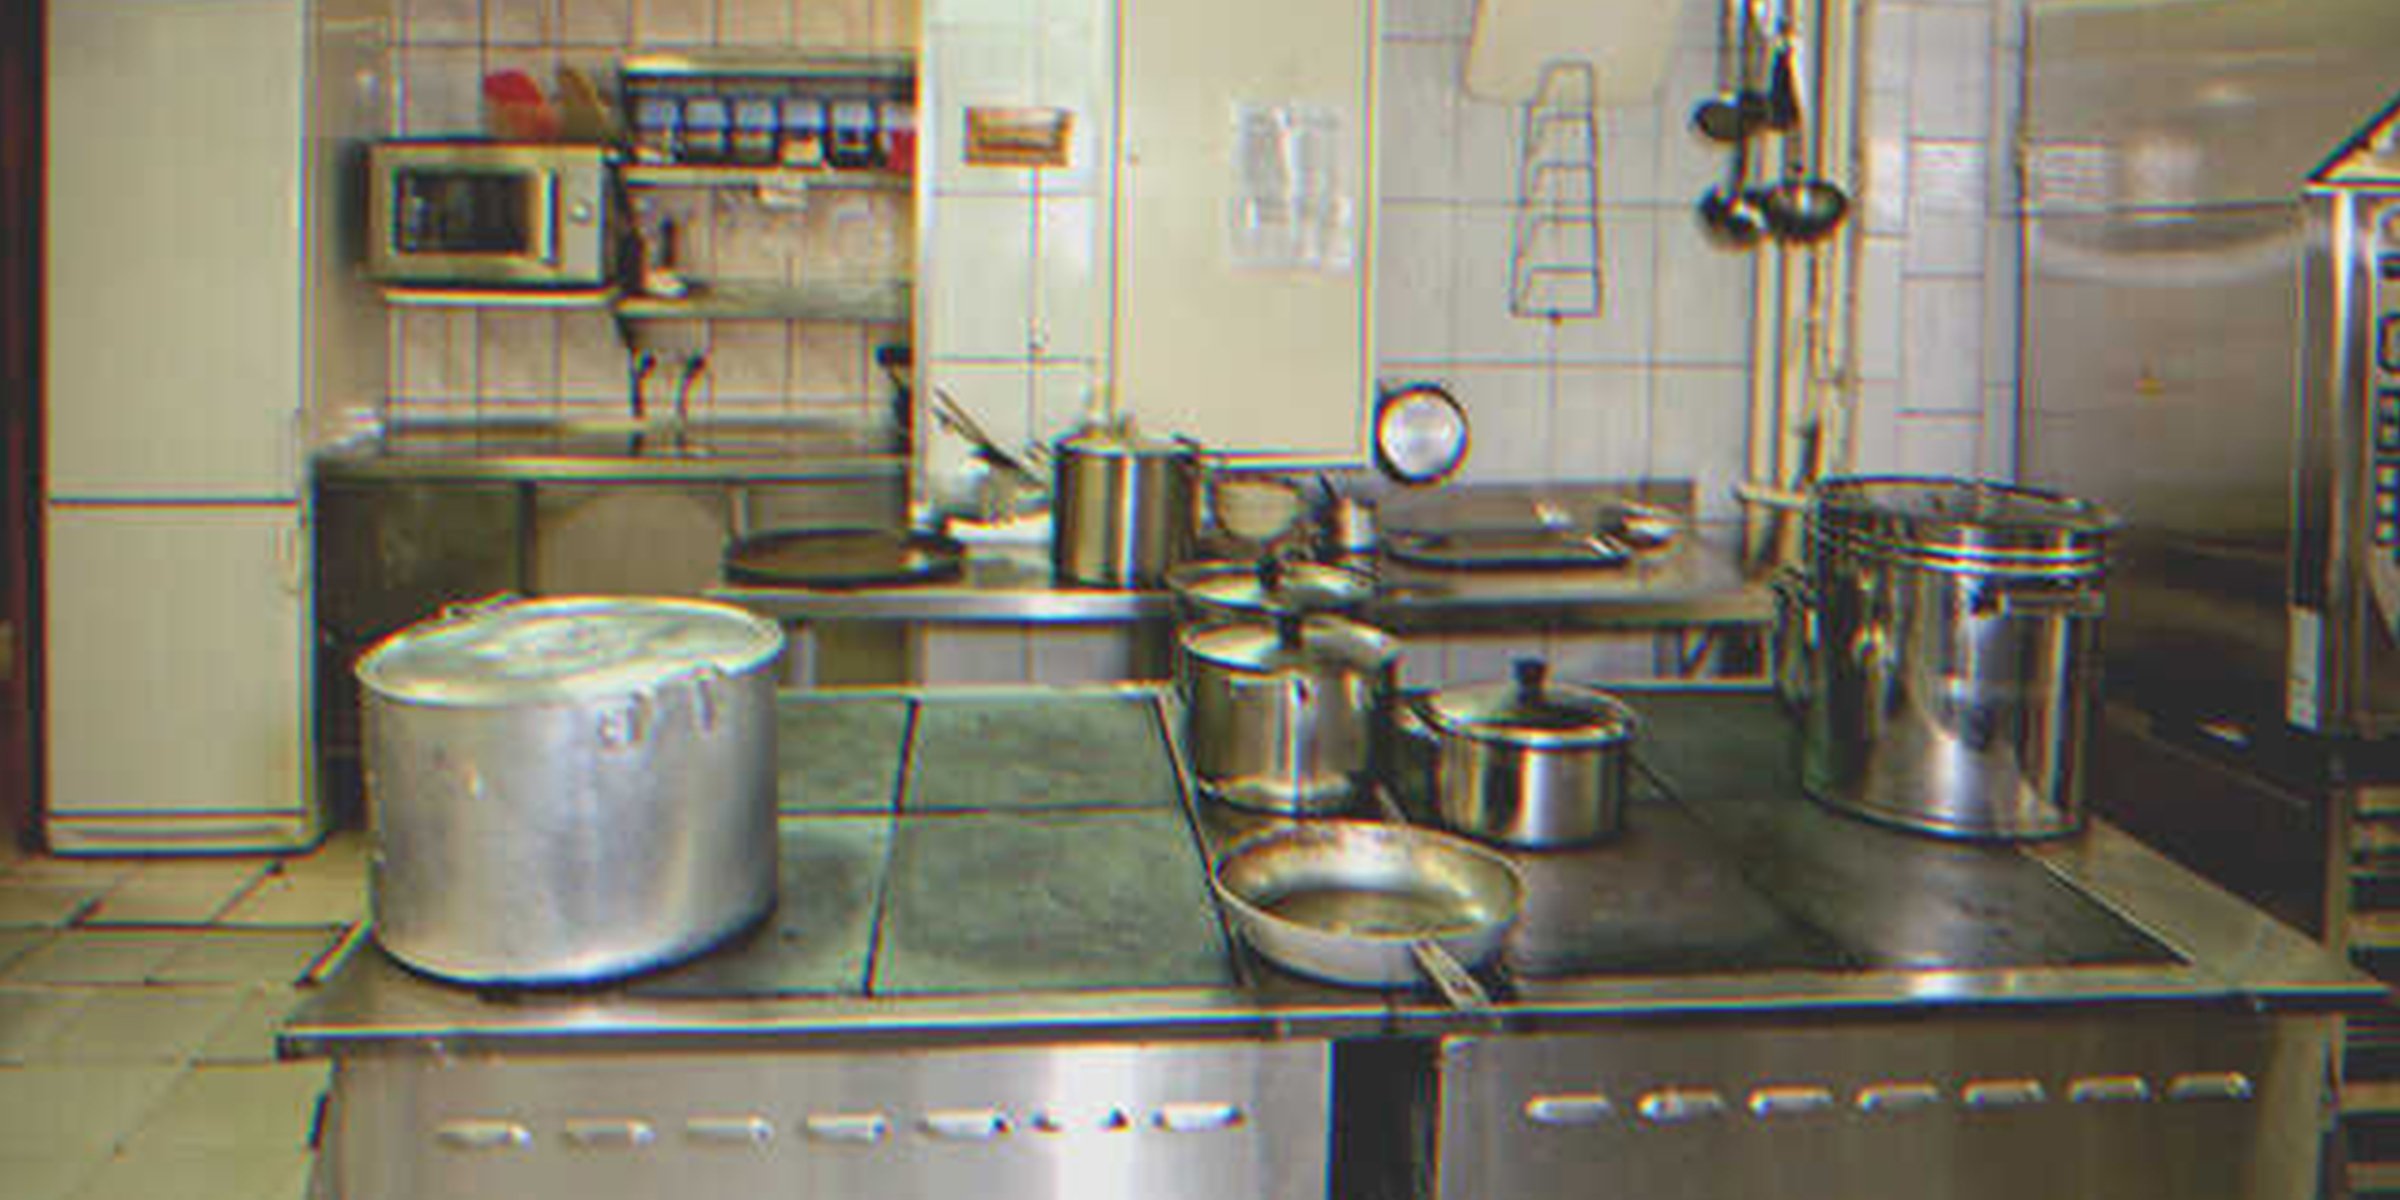 La cocina de una escuela. | Foto: Getty Images